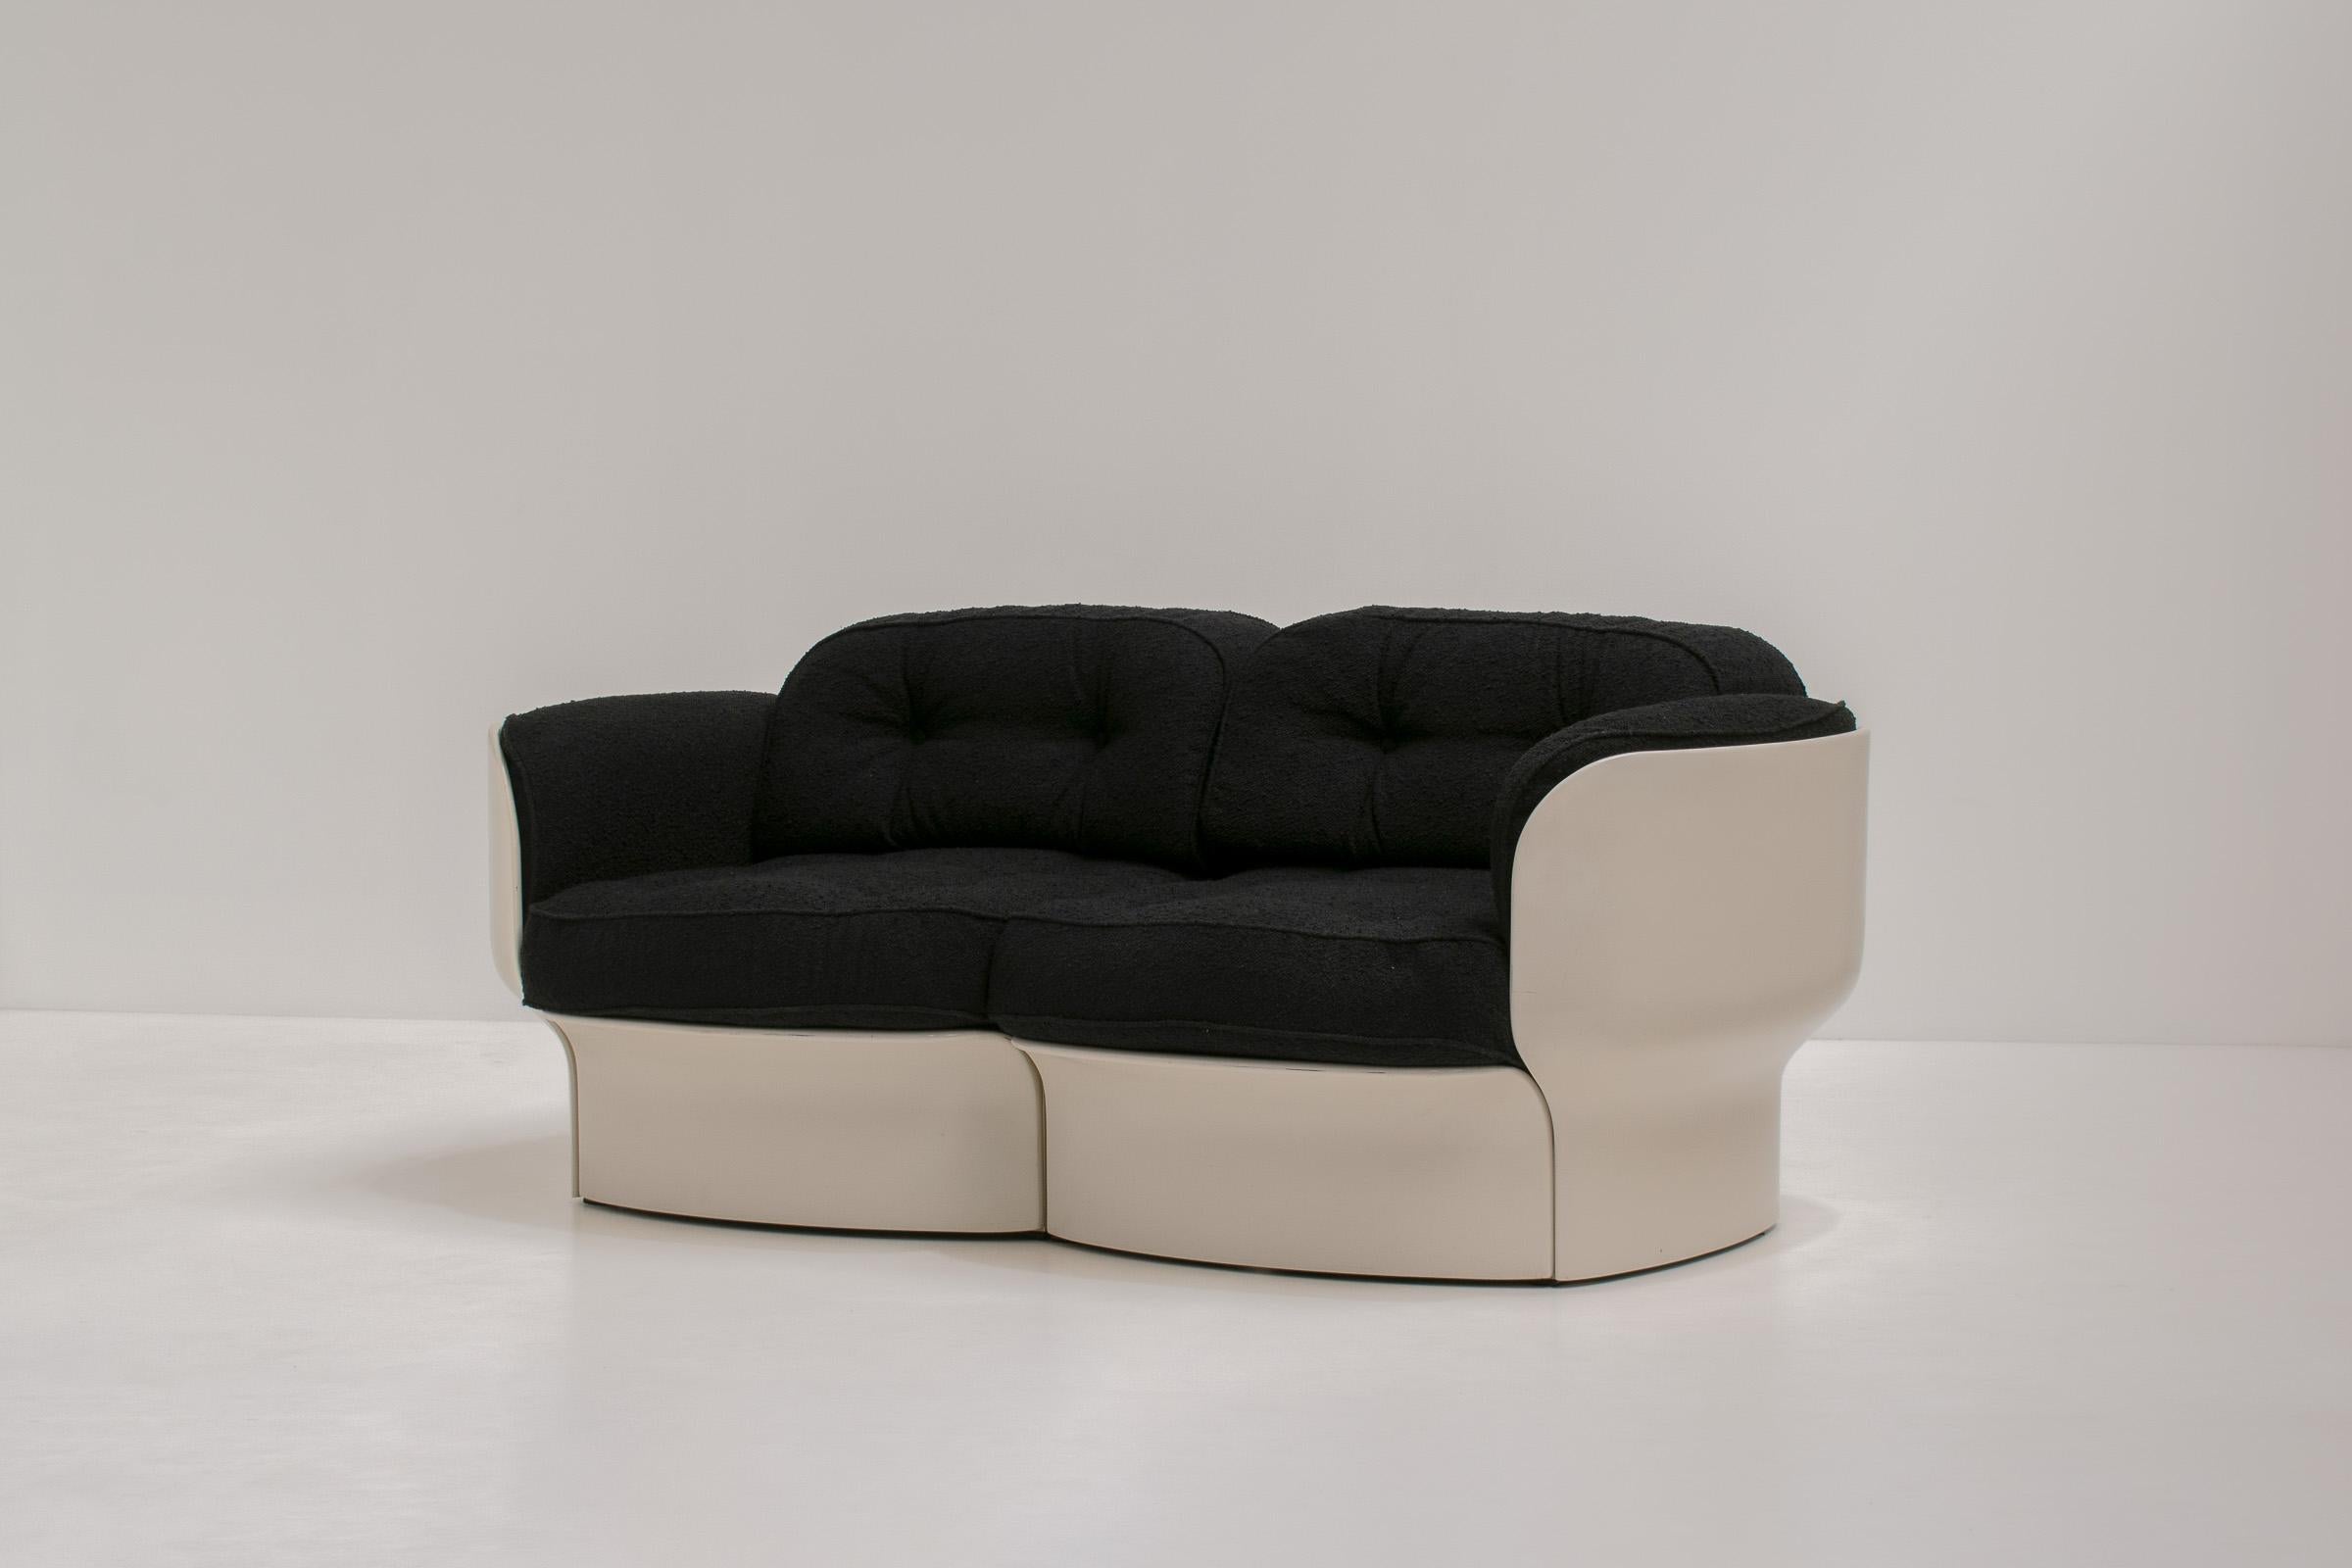 Das außergewöhnliche 2-Sitzer-Sofa von Peter Ghyczy aus den 1970er Jahren ist ein unglaublich seltenes und wirklich einzigartiges Stück. Auch als 